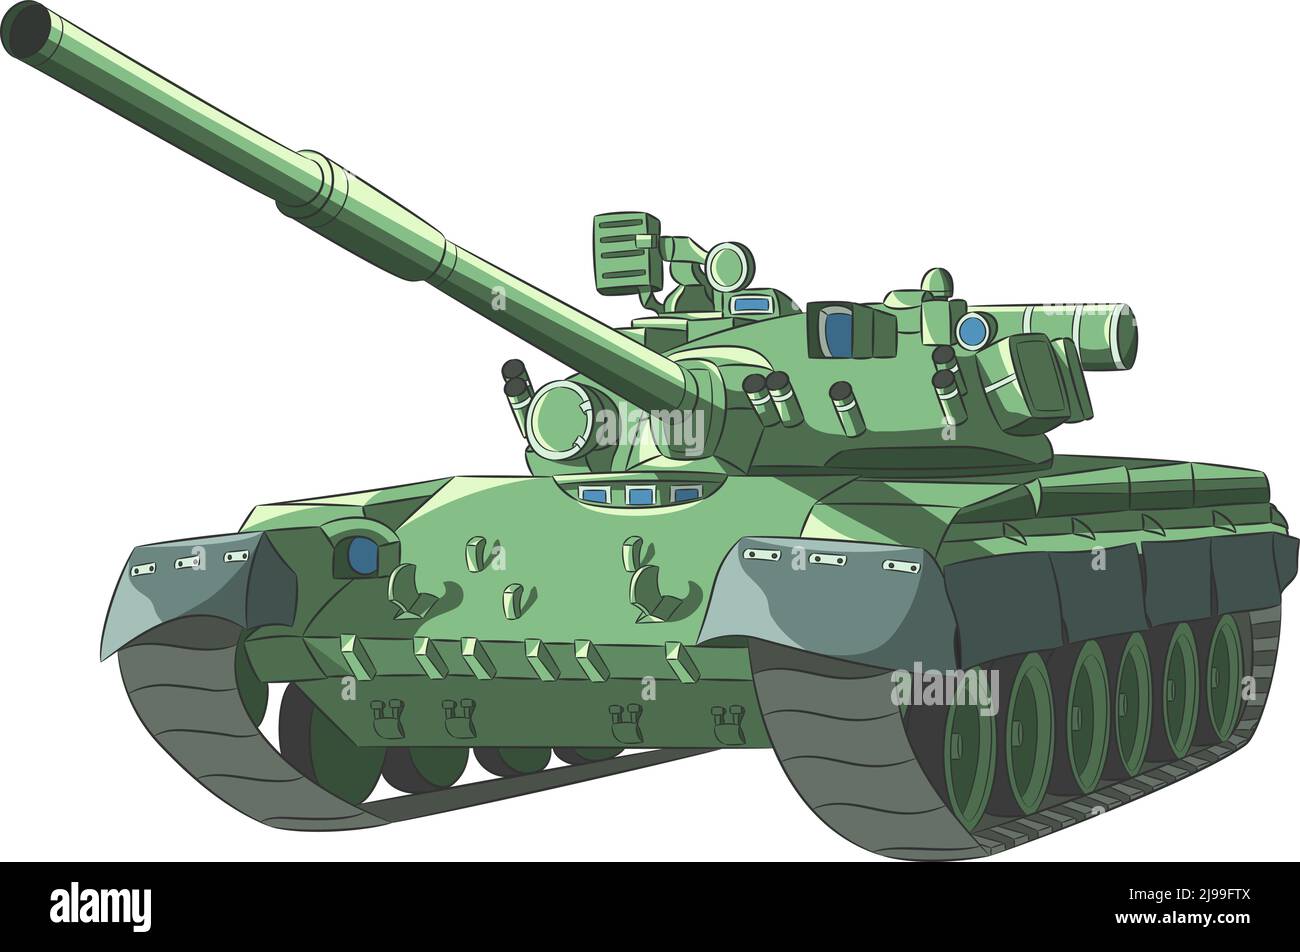 Sowjetischer Panzer in Camouflage grünen Farben isoliert auf weißem Hintergrund. Stock Vektor